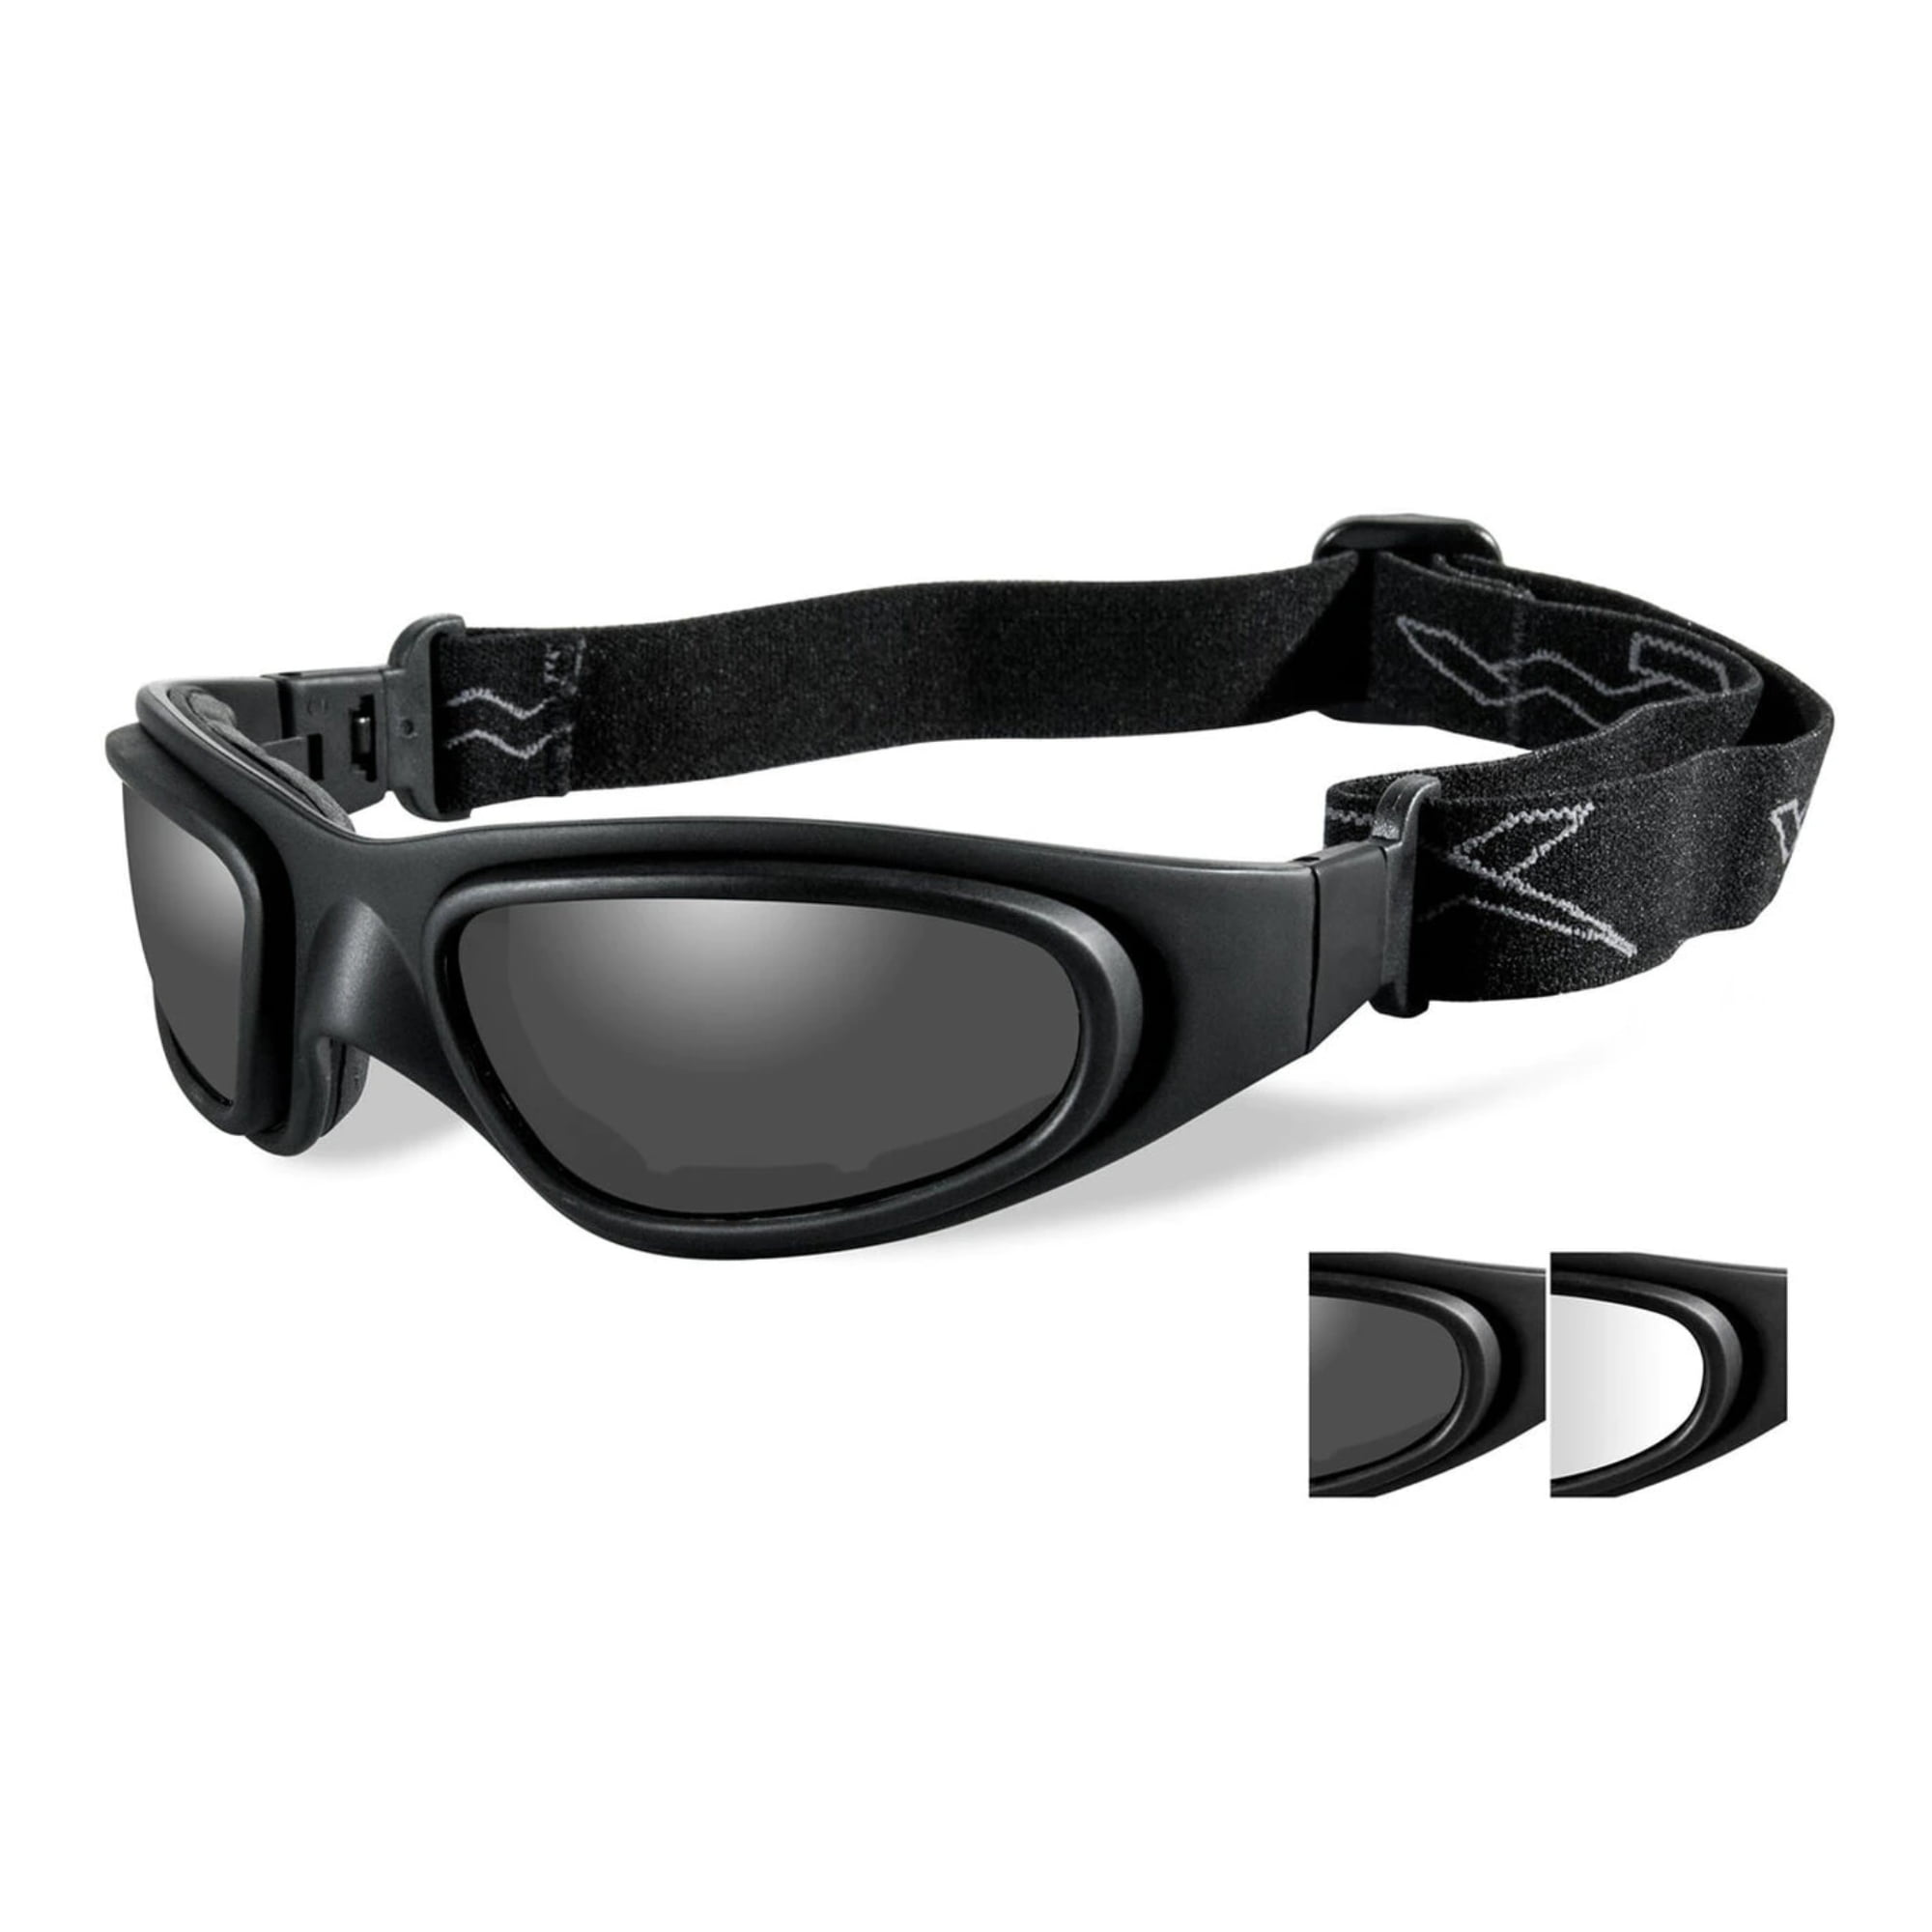 Хантер очки. Маска-очки Wiley-x SG-1. Тактические очки Wiley x. Очки WX Wiley-x. Тактические очки Wiley x SG-1 со сменными линзами.